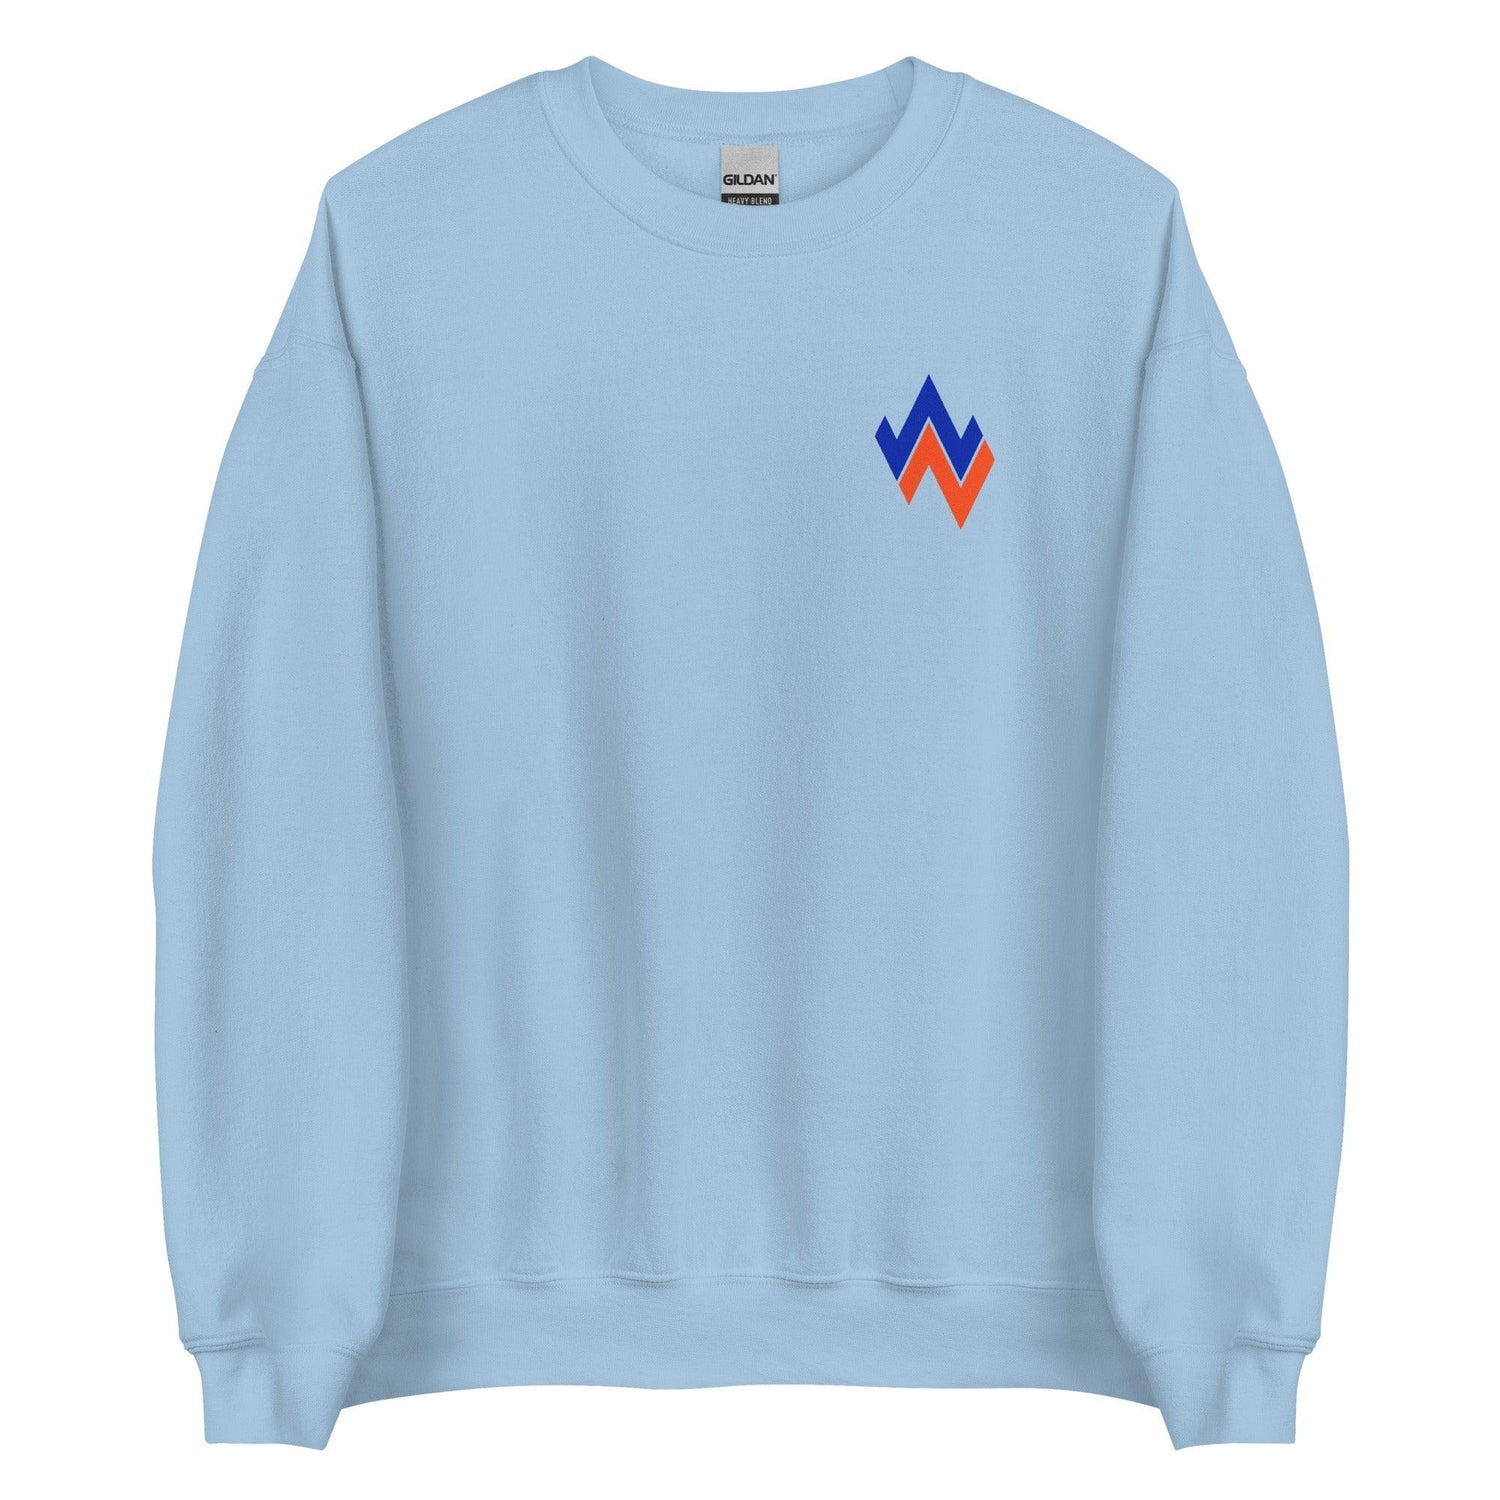 Will Norman "Essential" Sweatshirt - Fan Arch